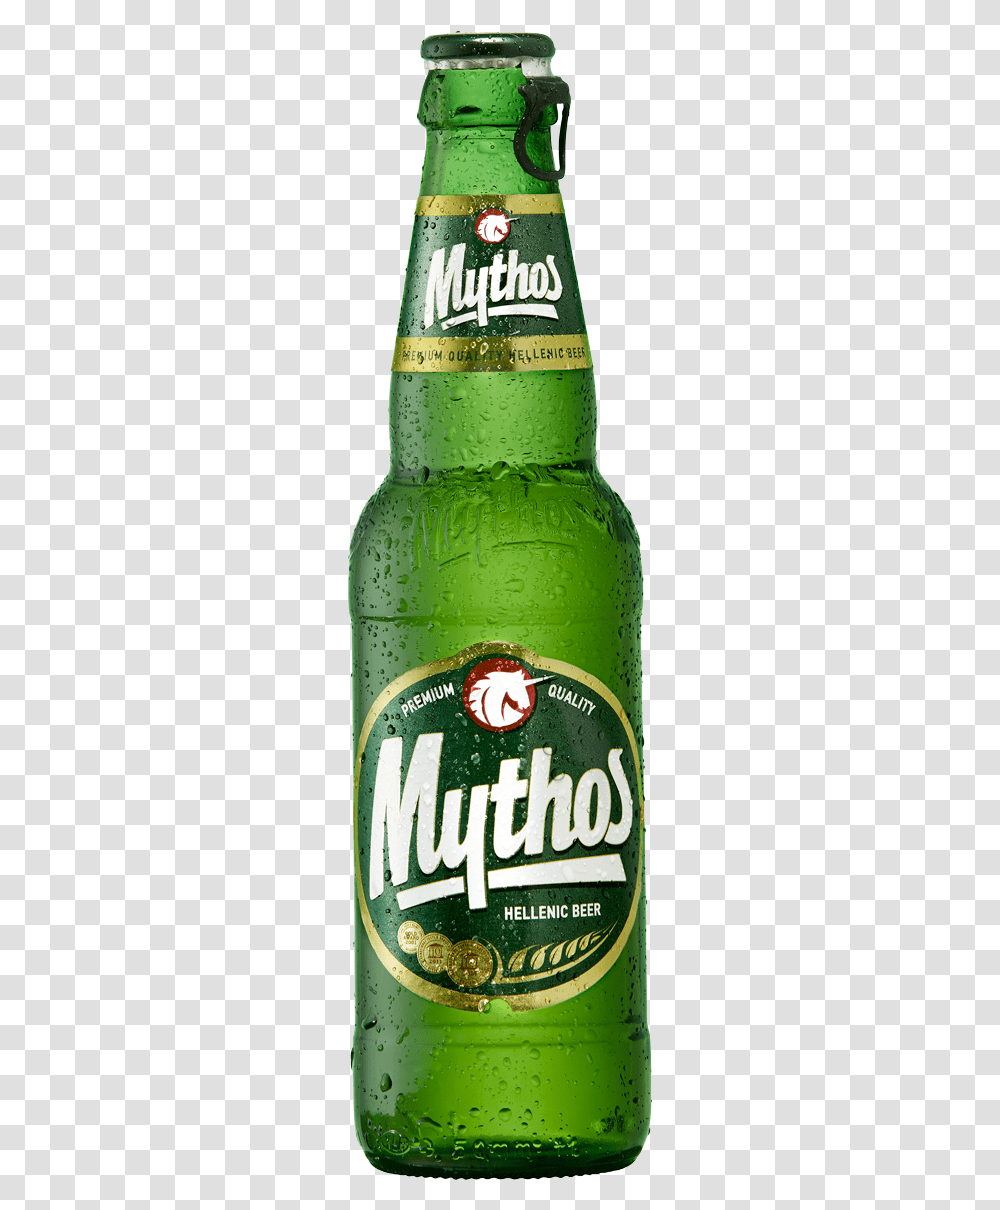 Mythos Mythos Greek Beer, Alcohol, Beverage, Drink, Green Transparent Png